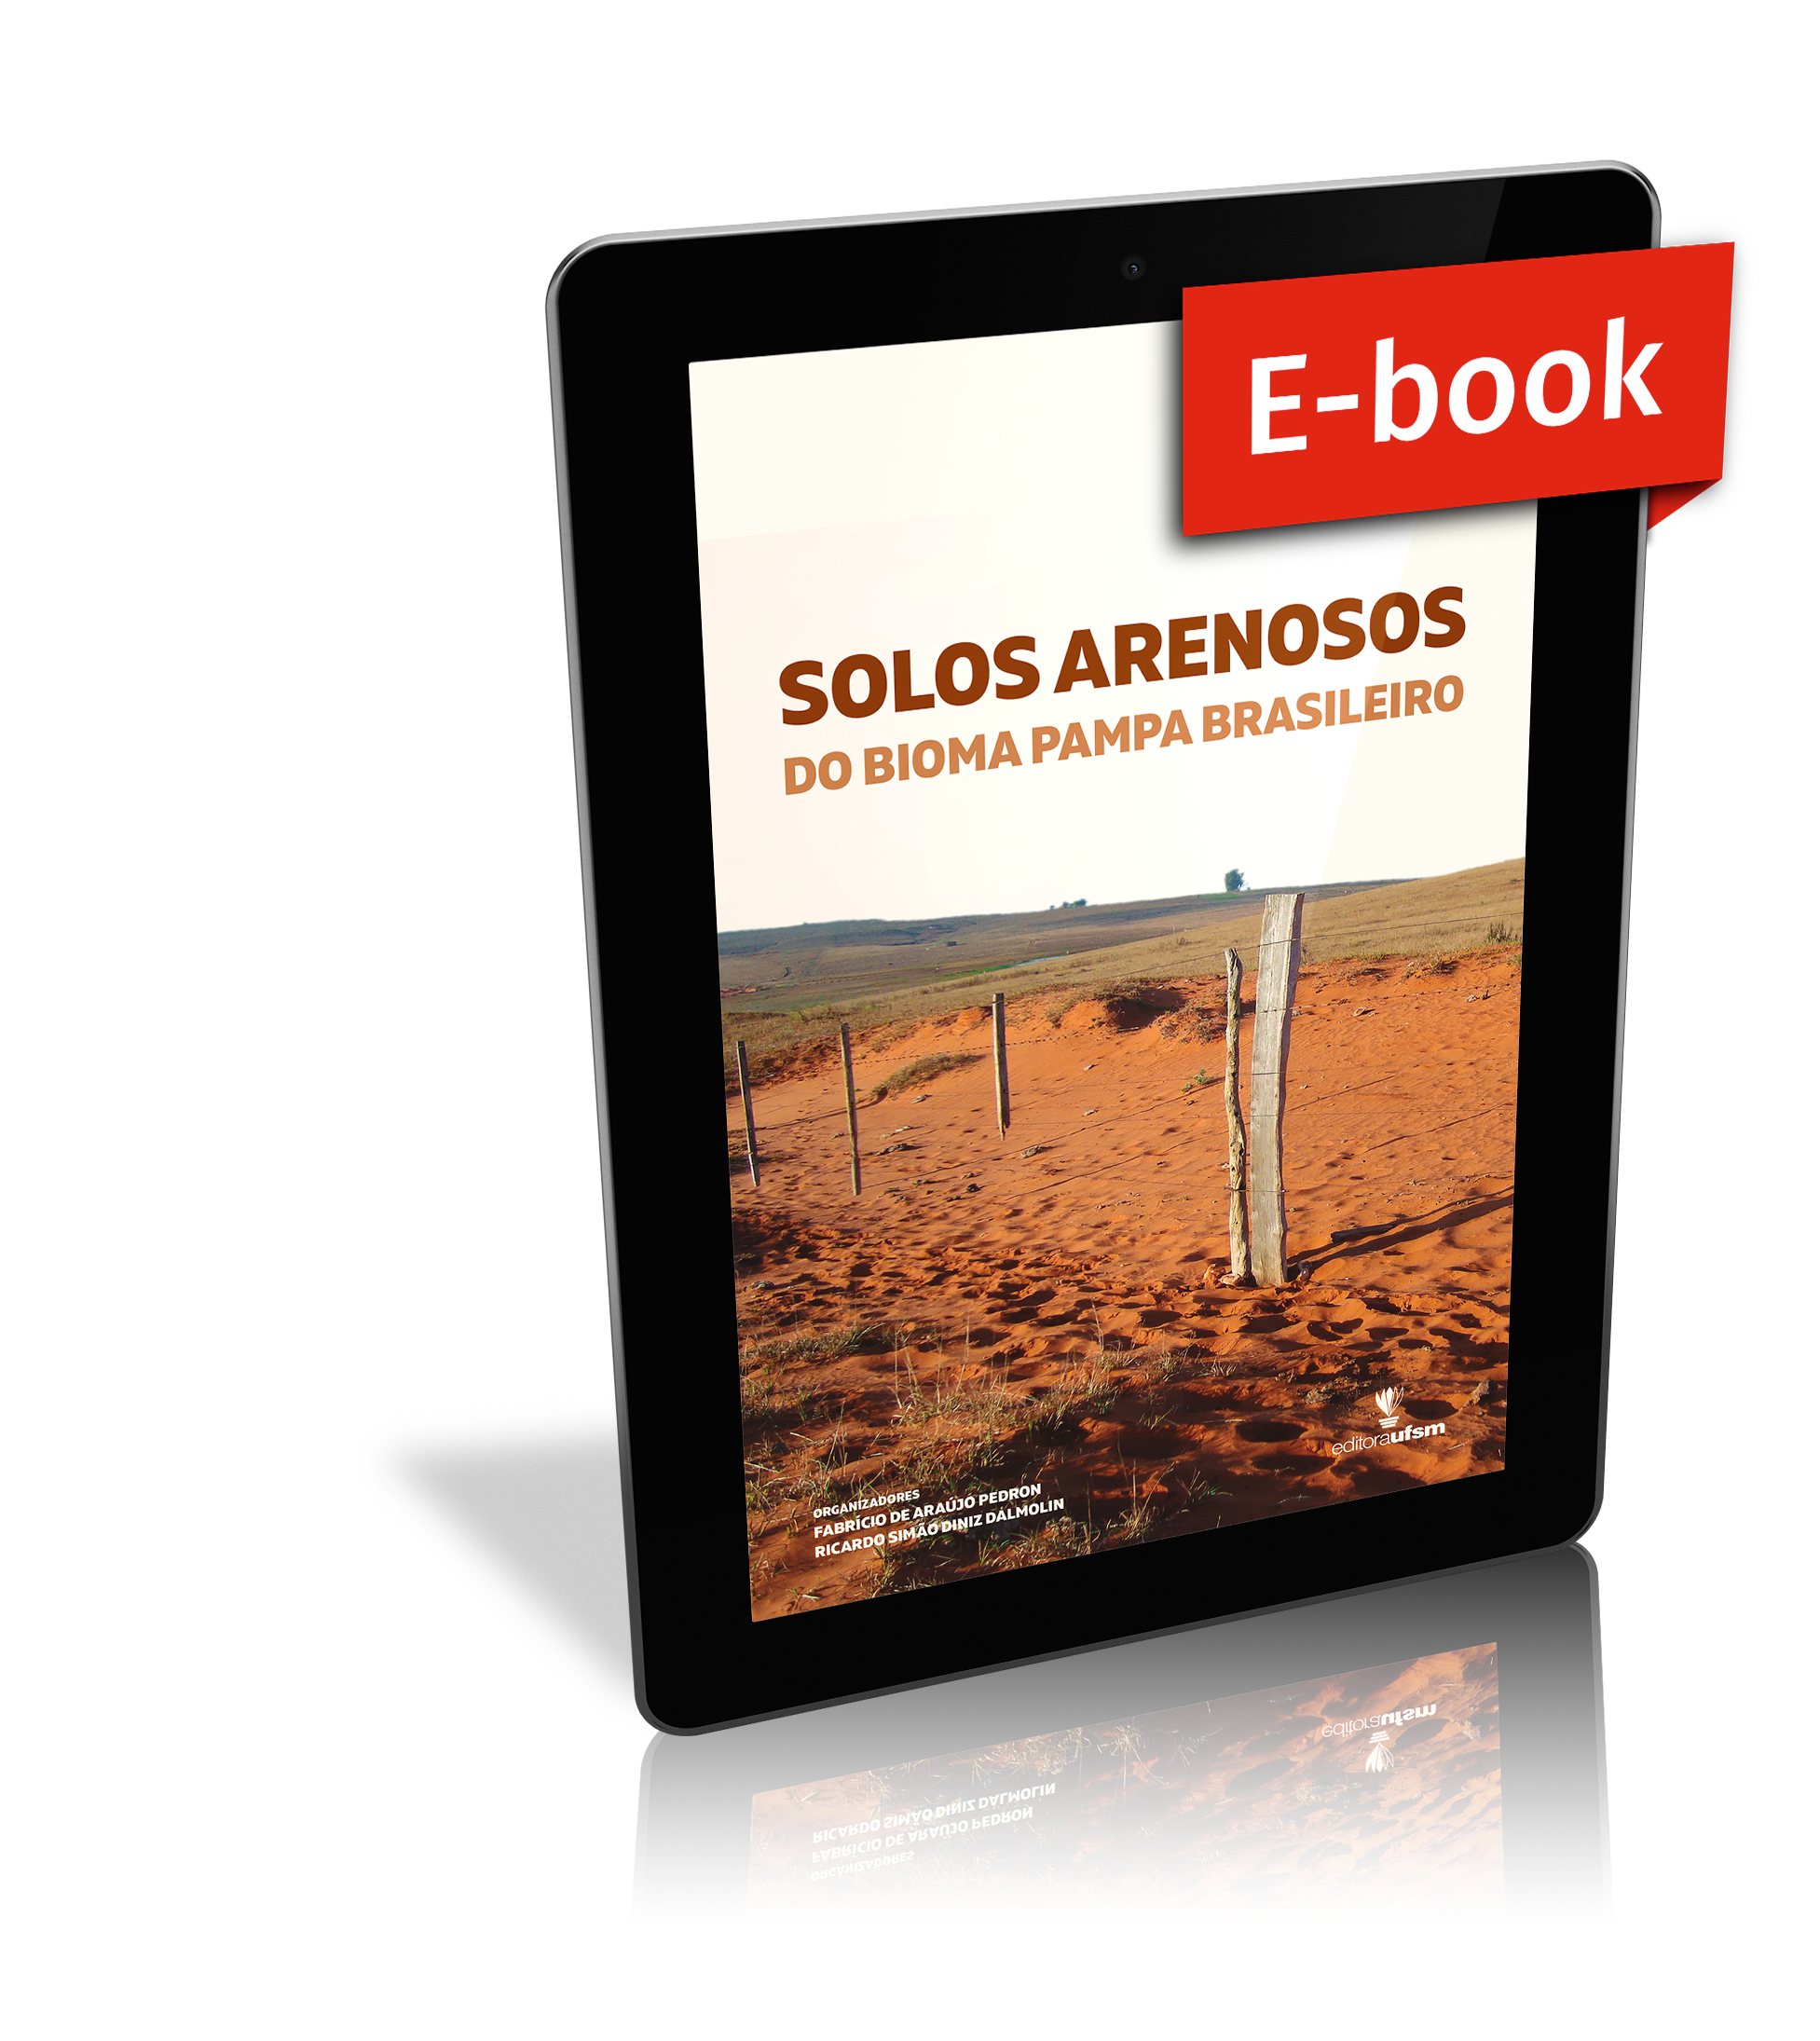 Capa do ebook Solos arenosos do Bioma Pampa brasileiro